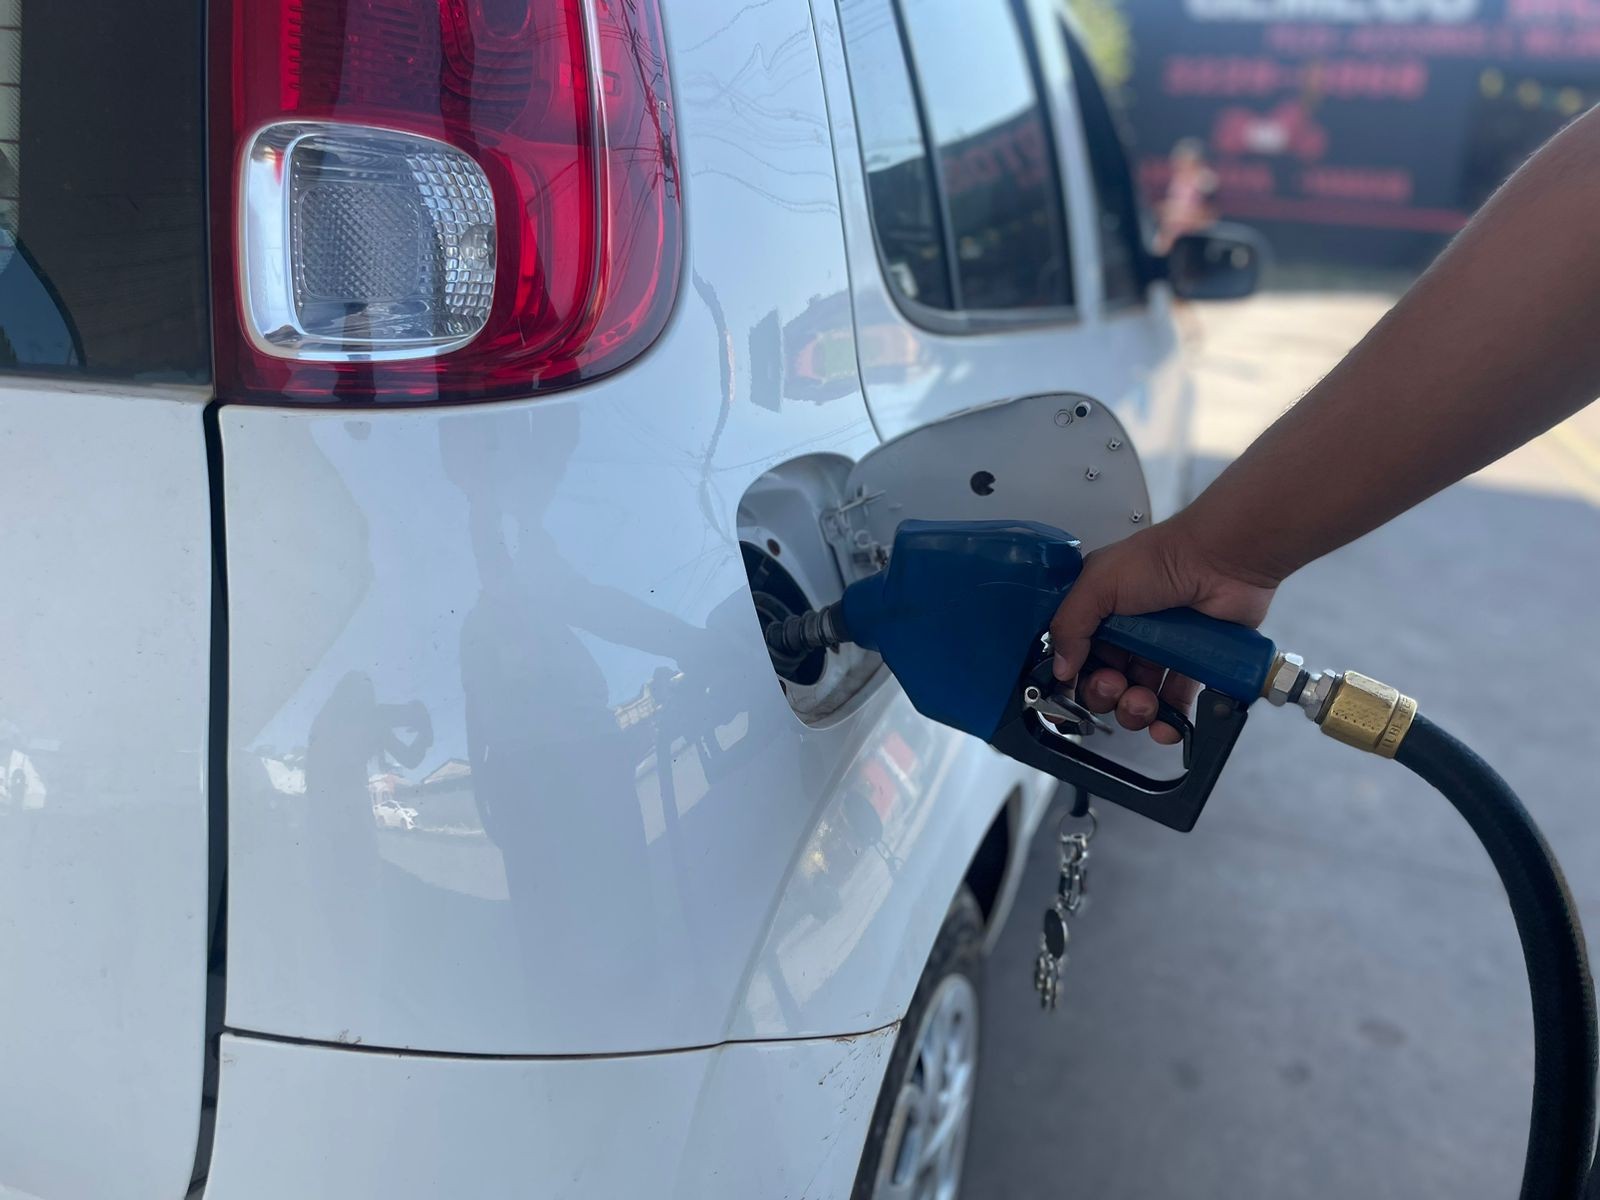 Gasolina tem média de R$6,64 em Rio Branco e é a mais cara do país em setembro, aponta levantamento